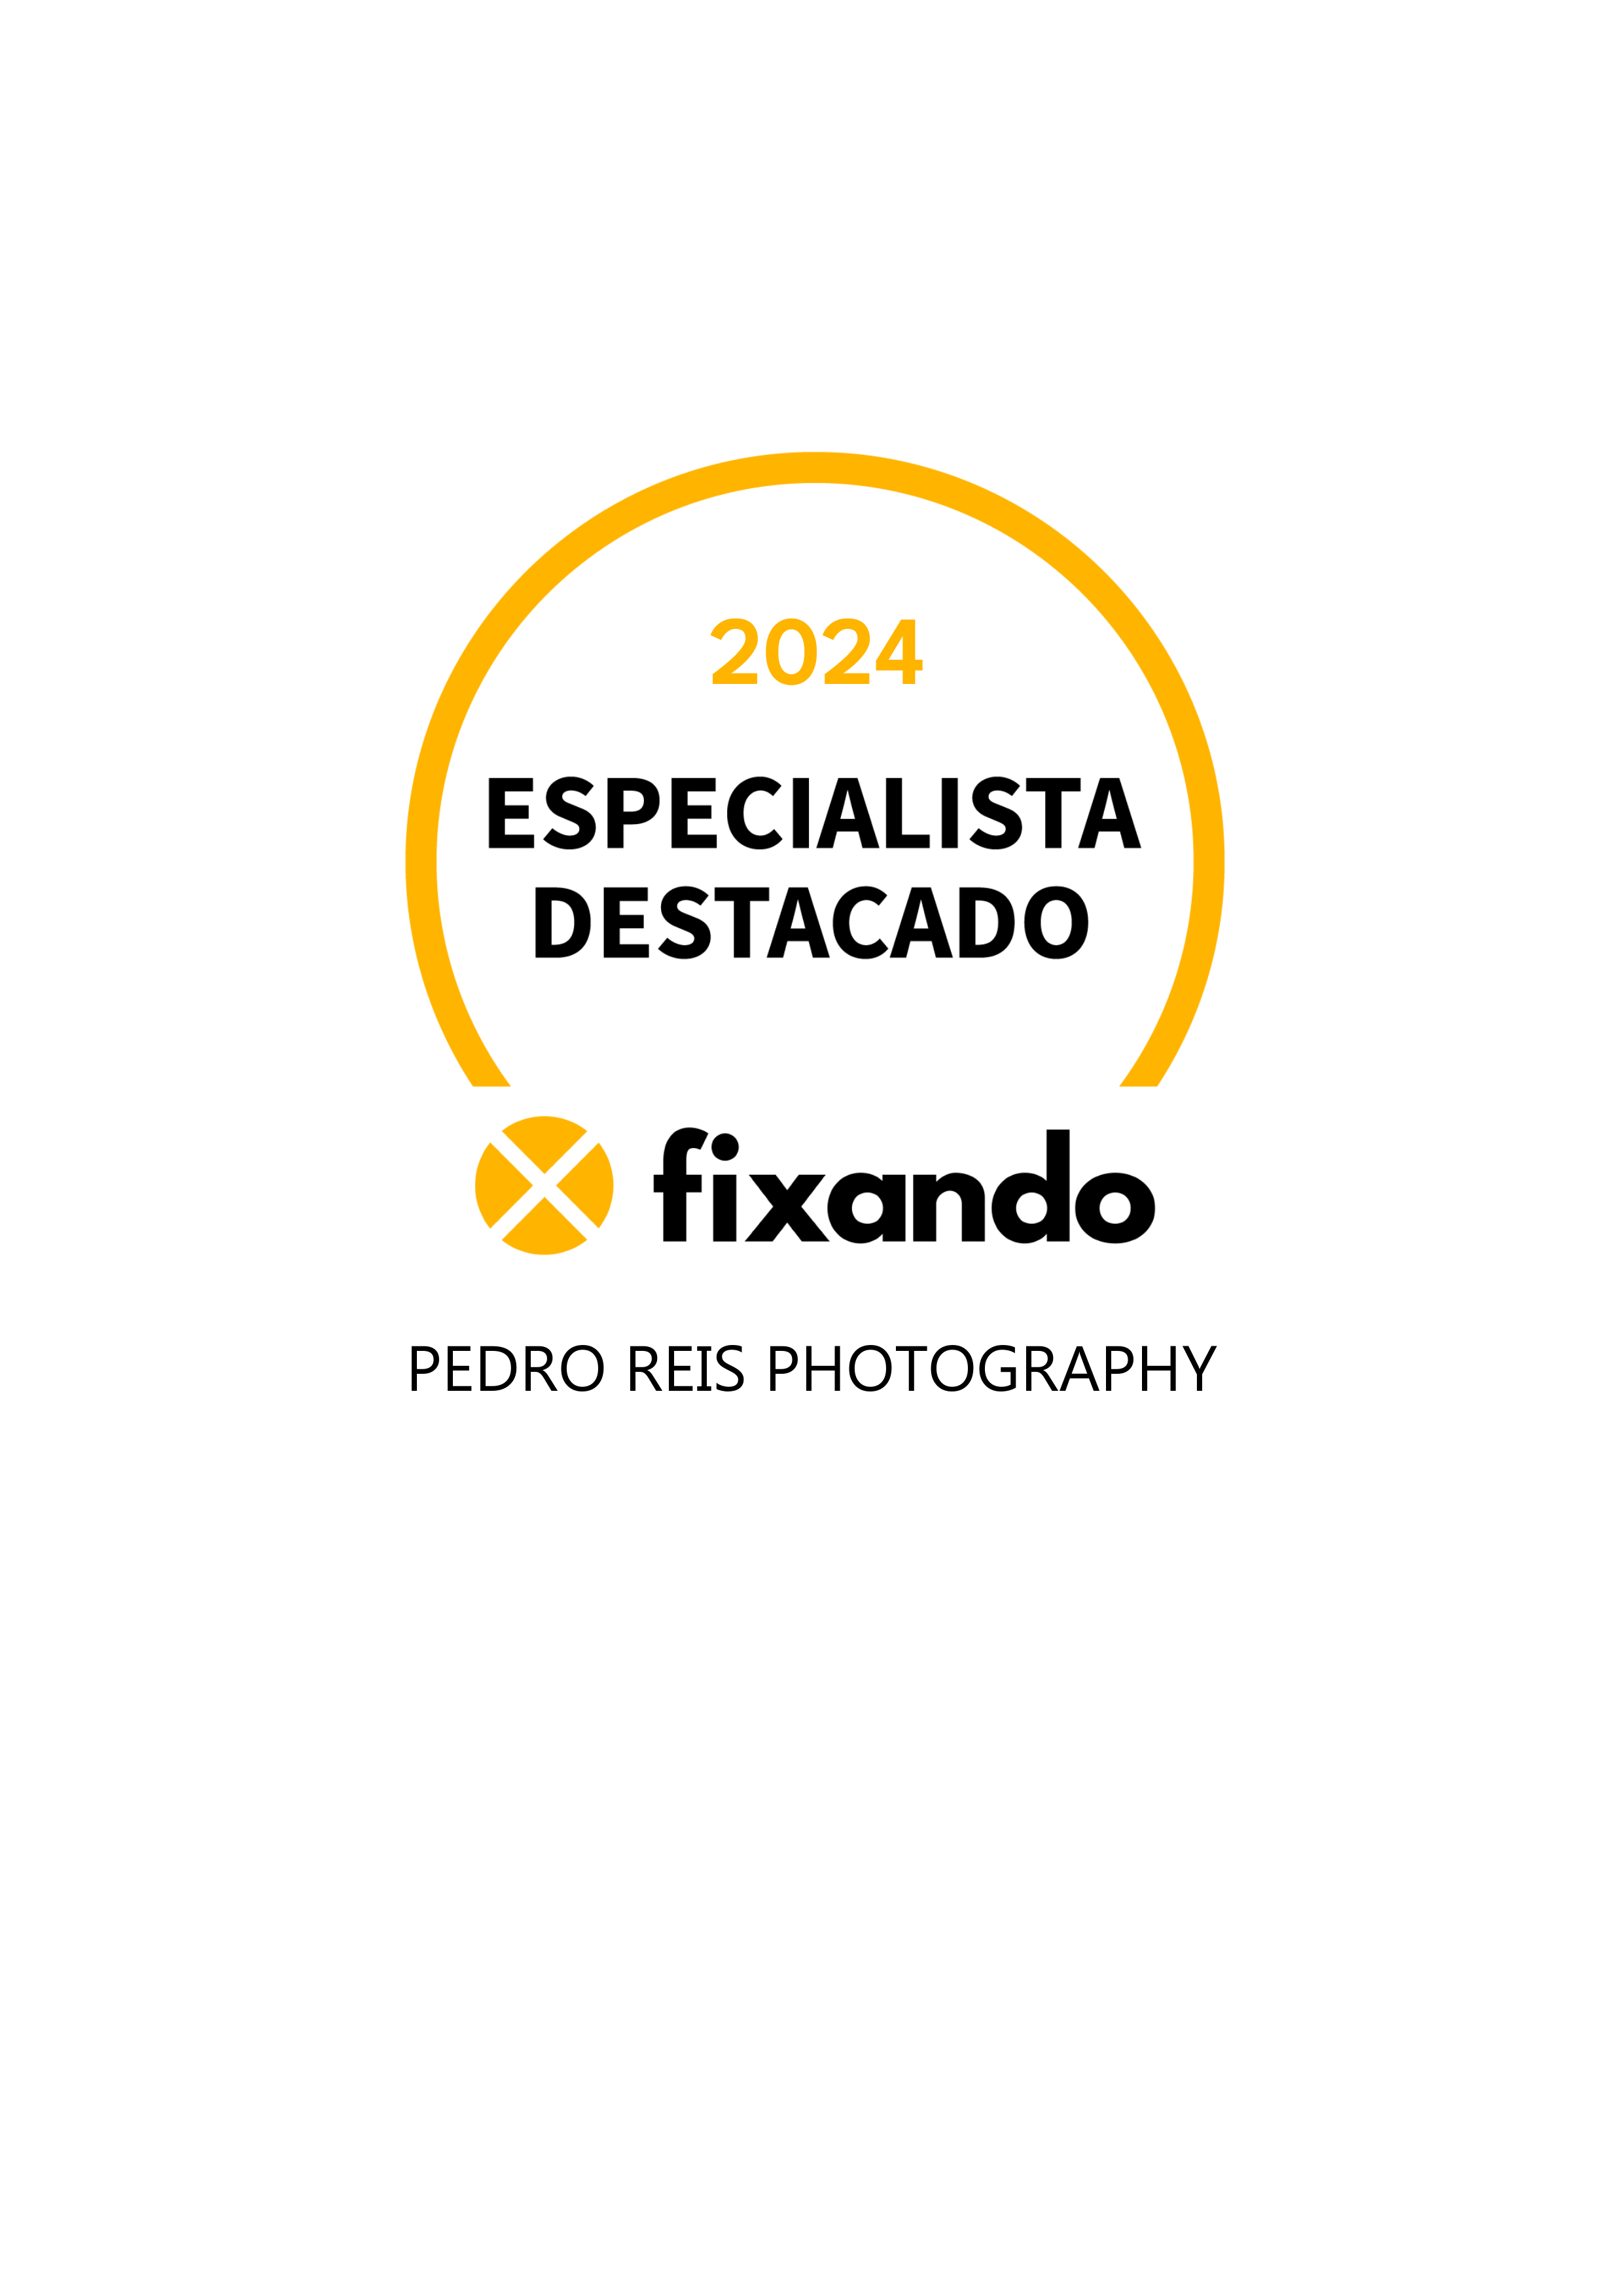 Pedro Reis Photography - Setúbal - Fotografia de Eventos